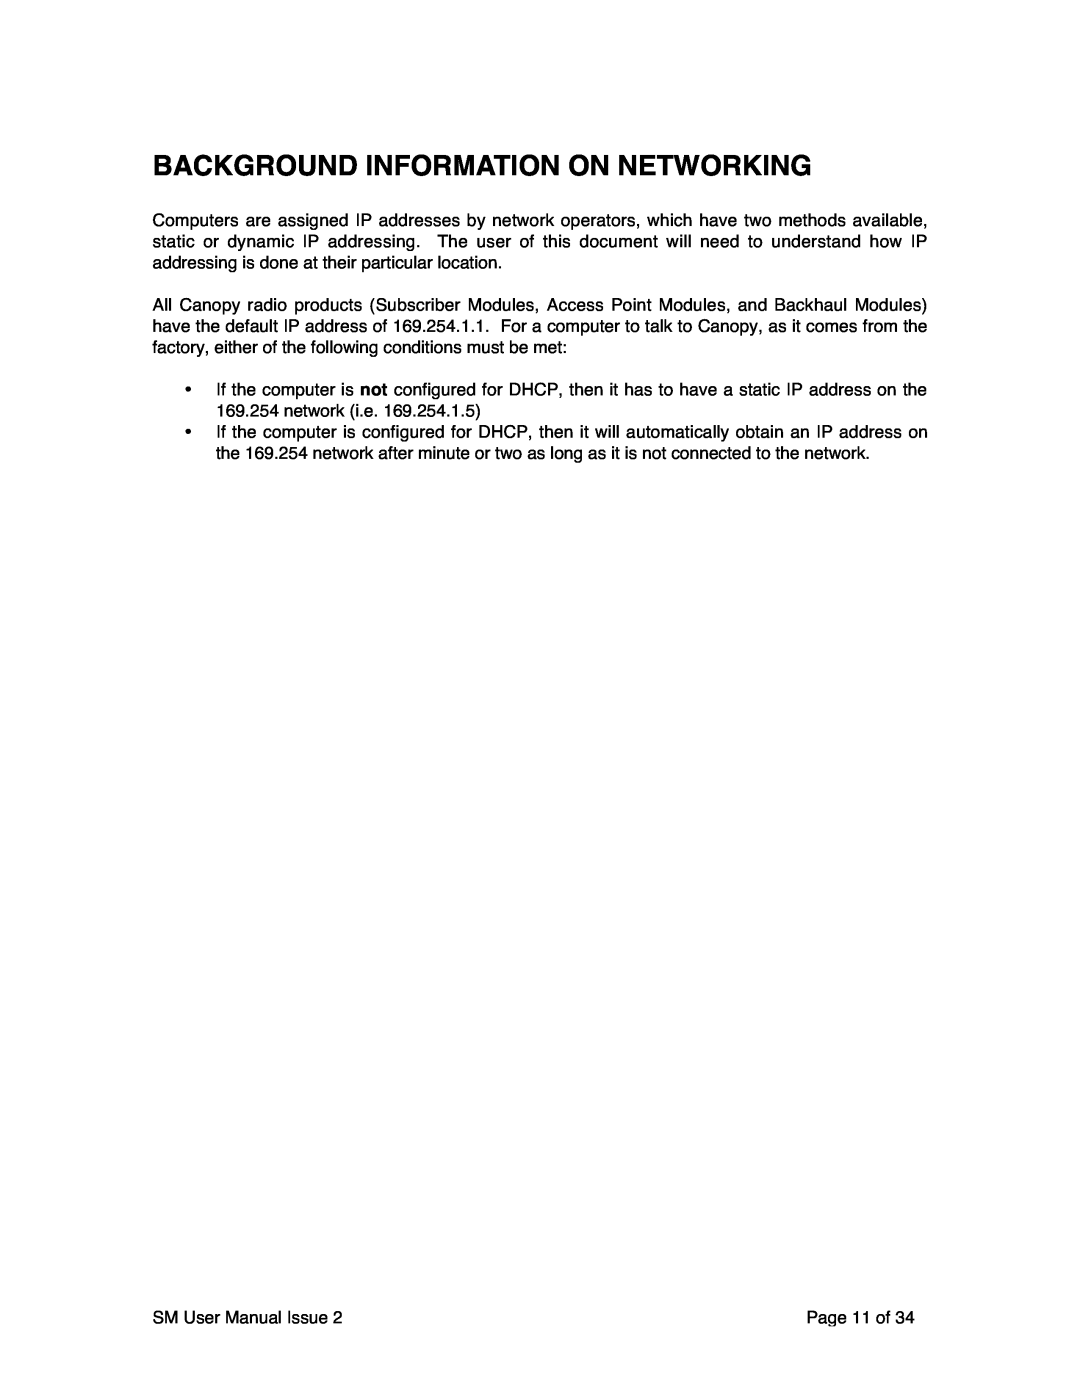 Motorola SM02-UG-en user manual Background Information On Networking 